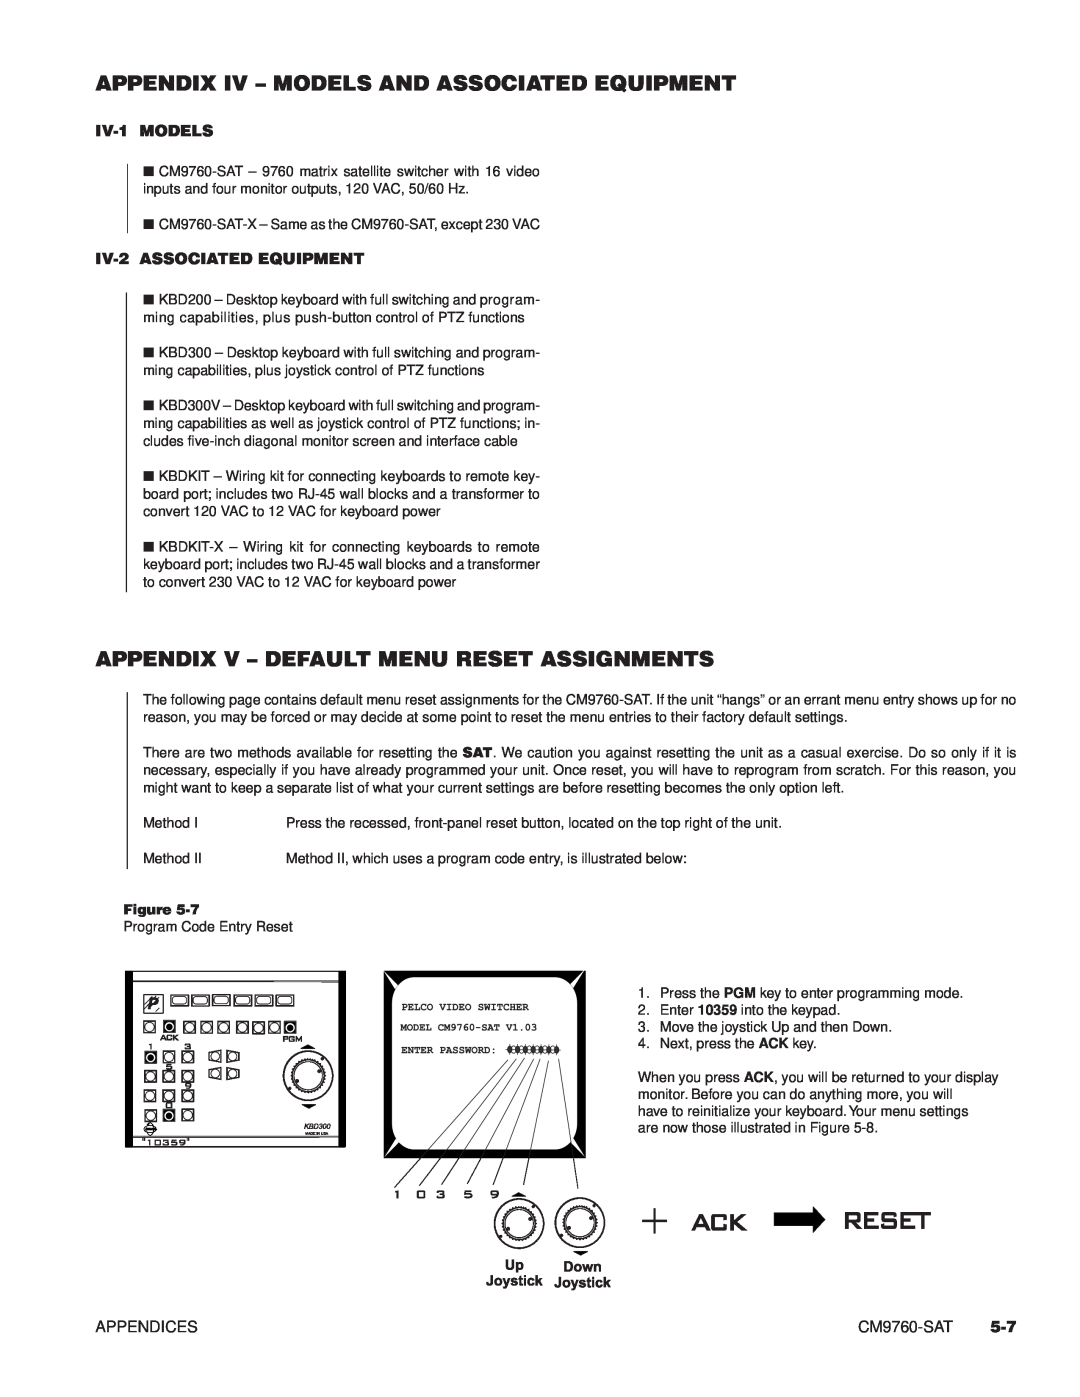 Pelco C1503M, C538M Appendix Iv - Models And Associated Equipment, Appendix V – Default Menu Reset Assignments, IV-1MODELS 